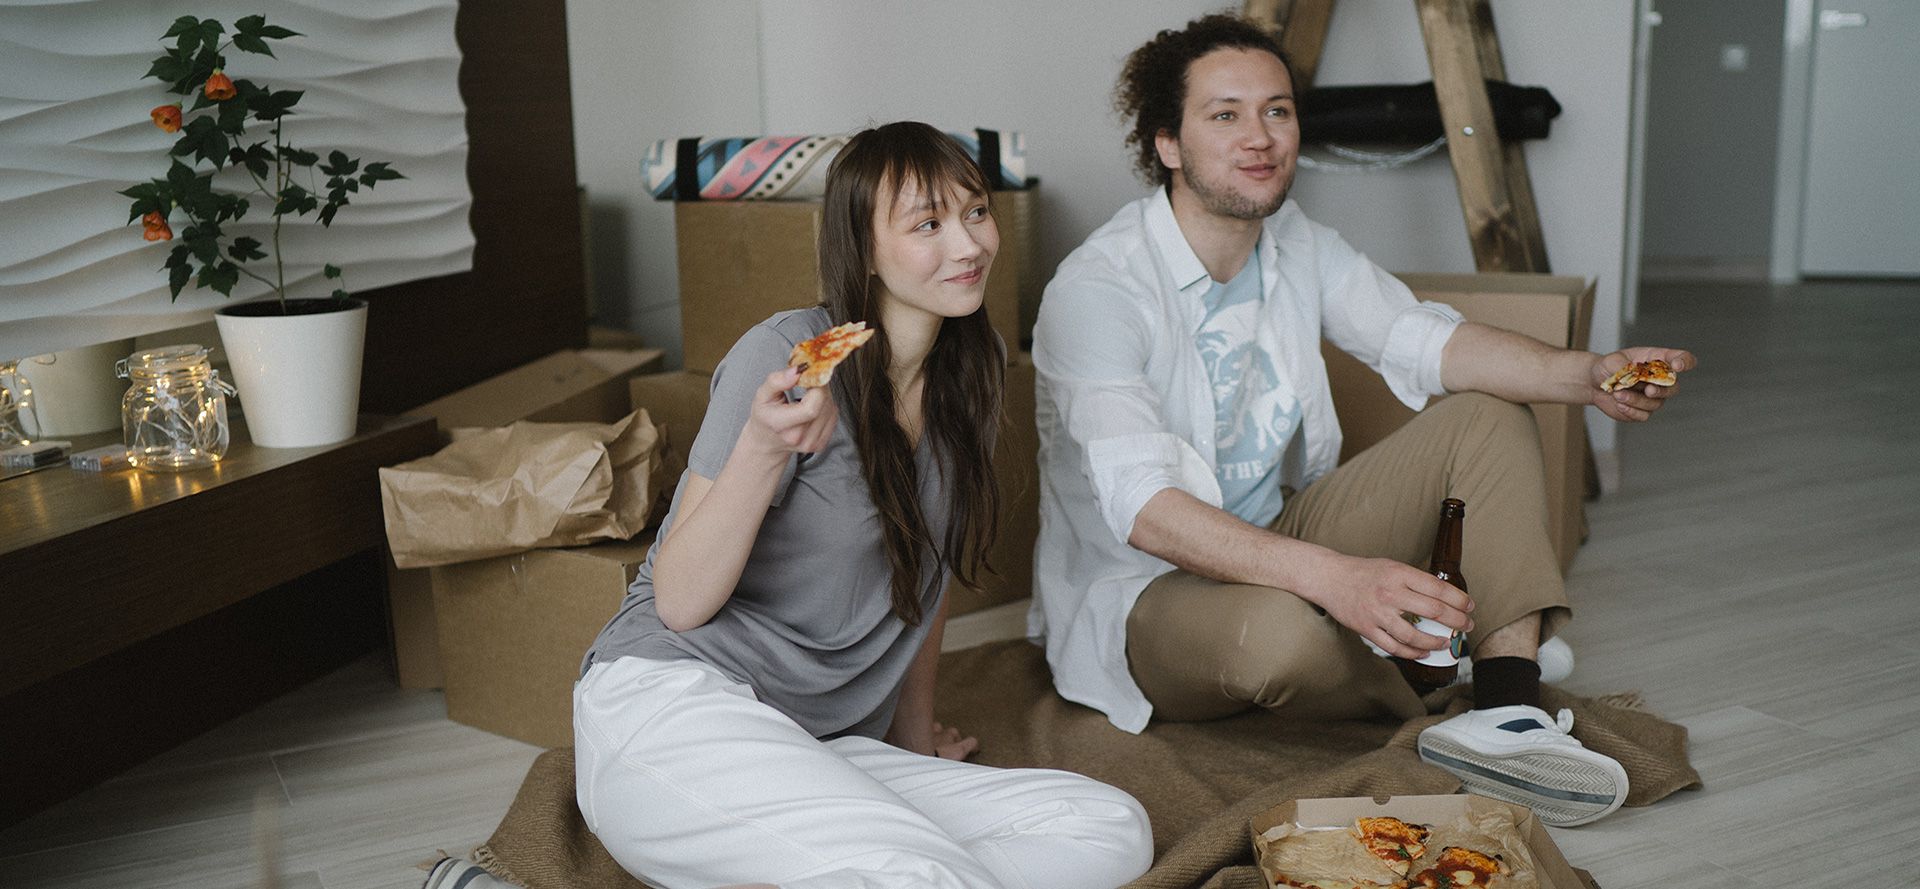 Een stel dat pizza eet tijdens een afspraakje.